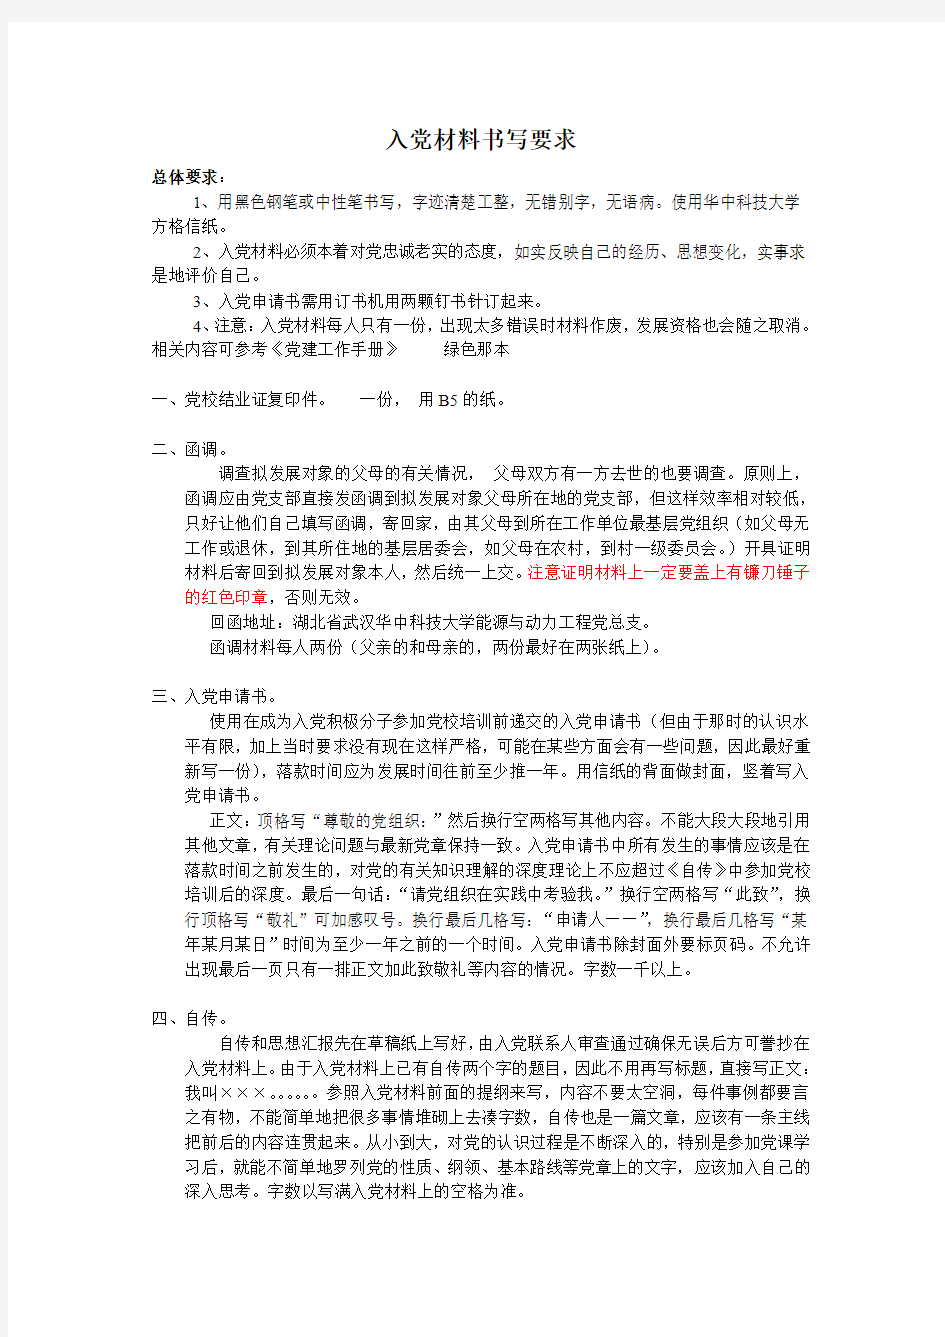 华中科技大学--党员发展材料格式规范